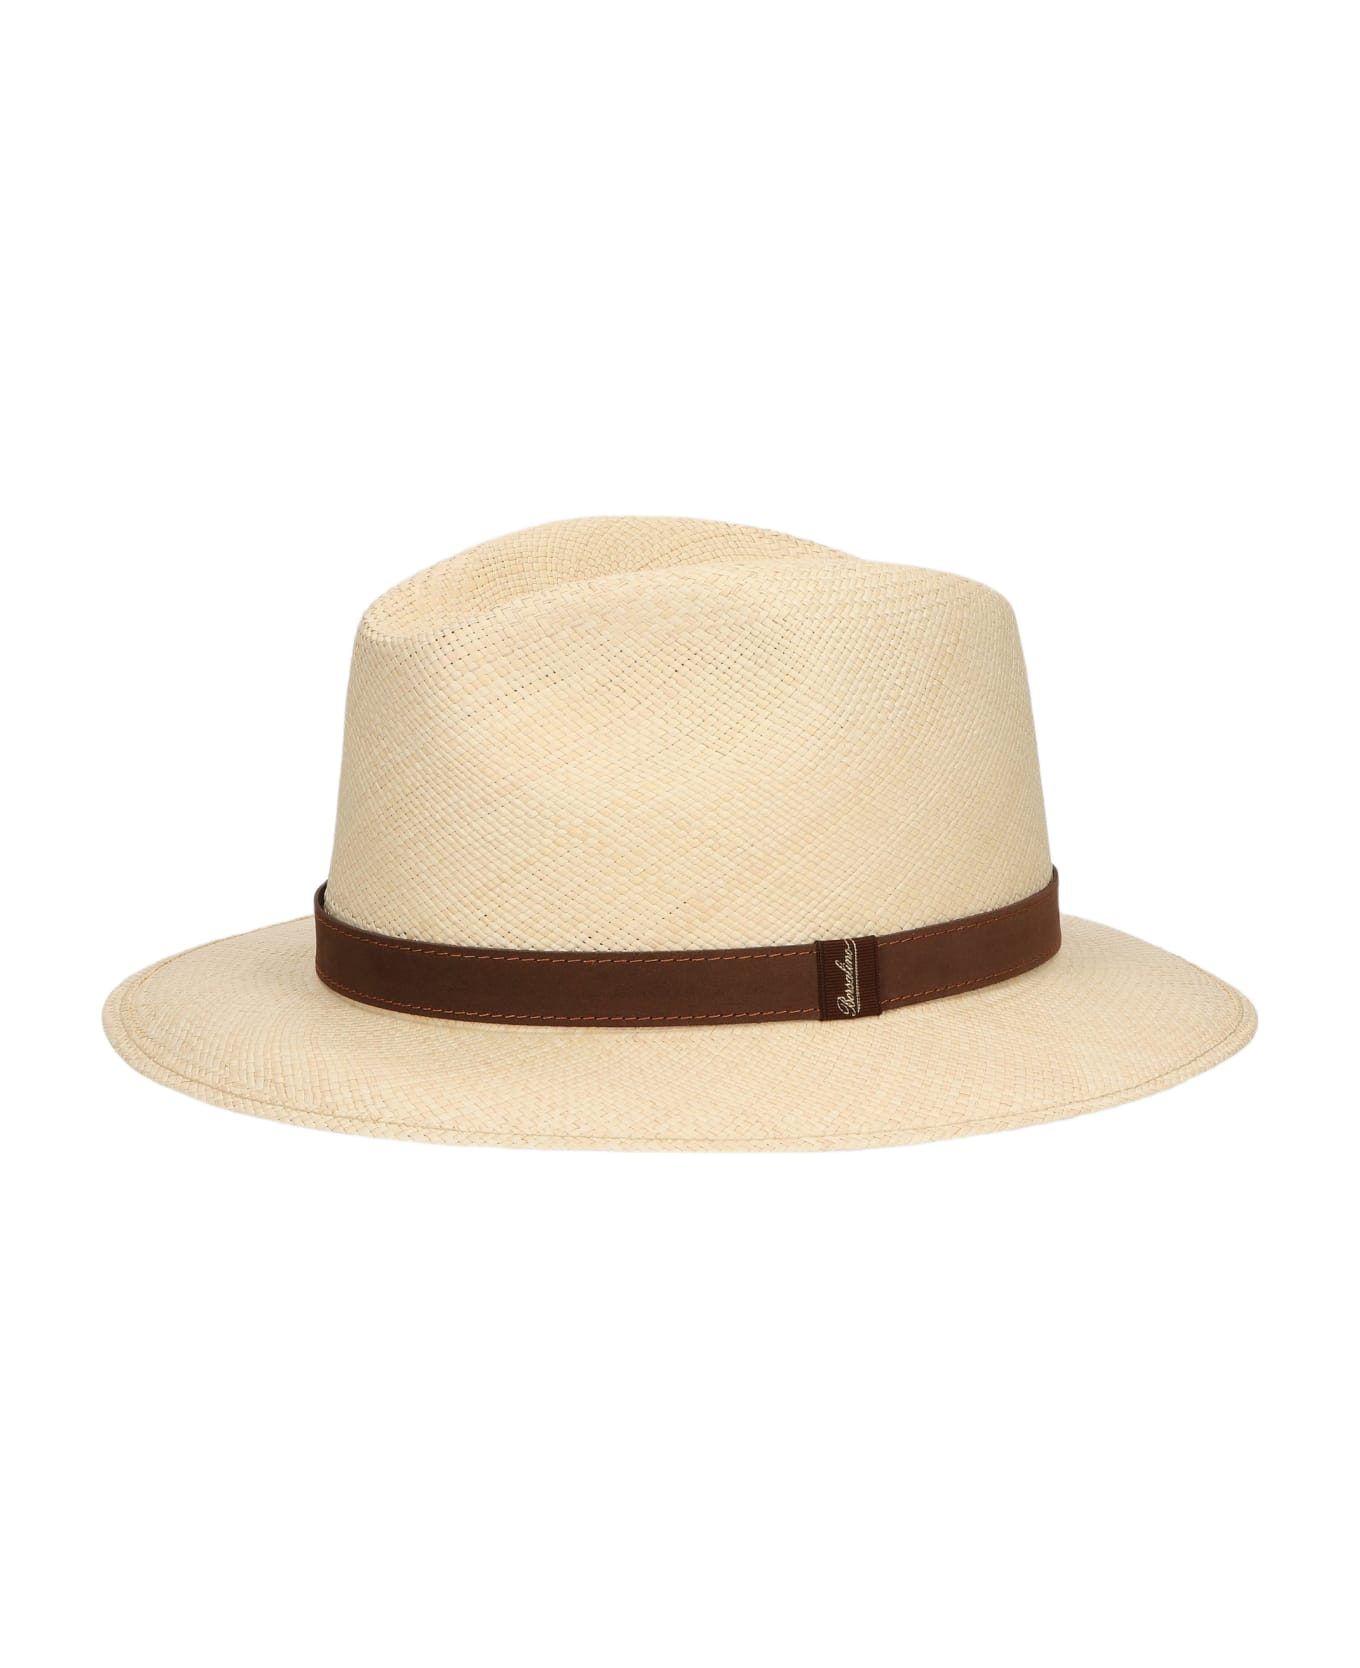 Borsalino Country Panama Quito Medium Brim - NATURAL, DARK BROWN HAT BAND 帽子